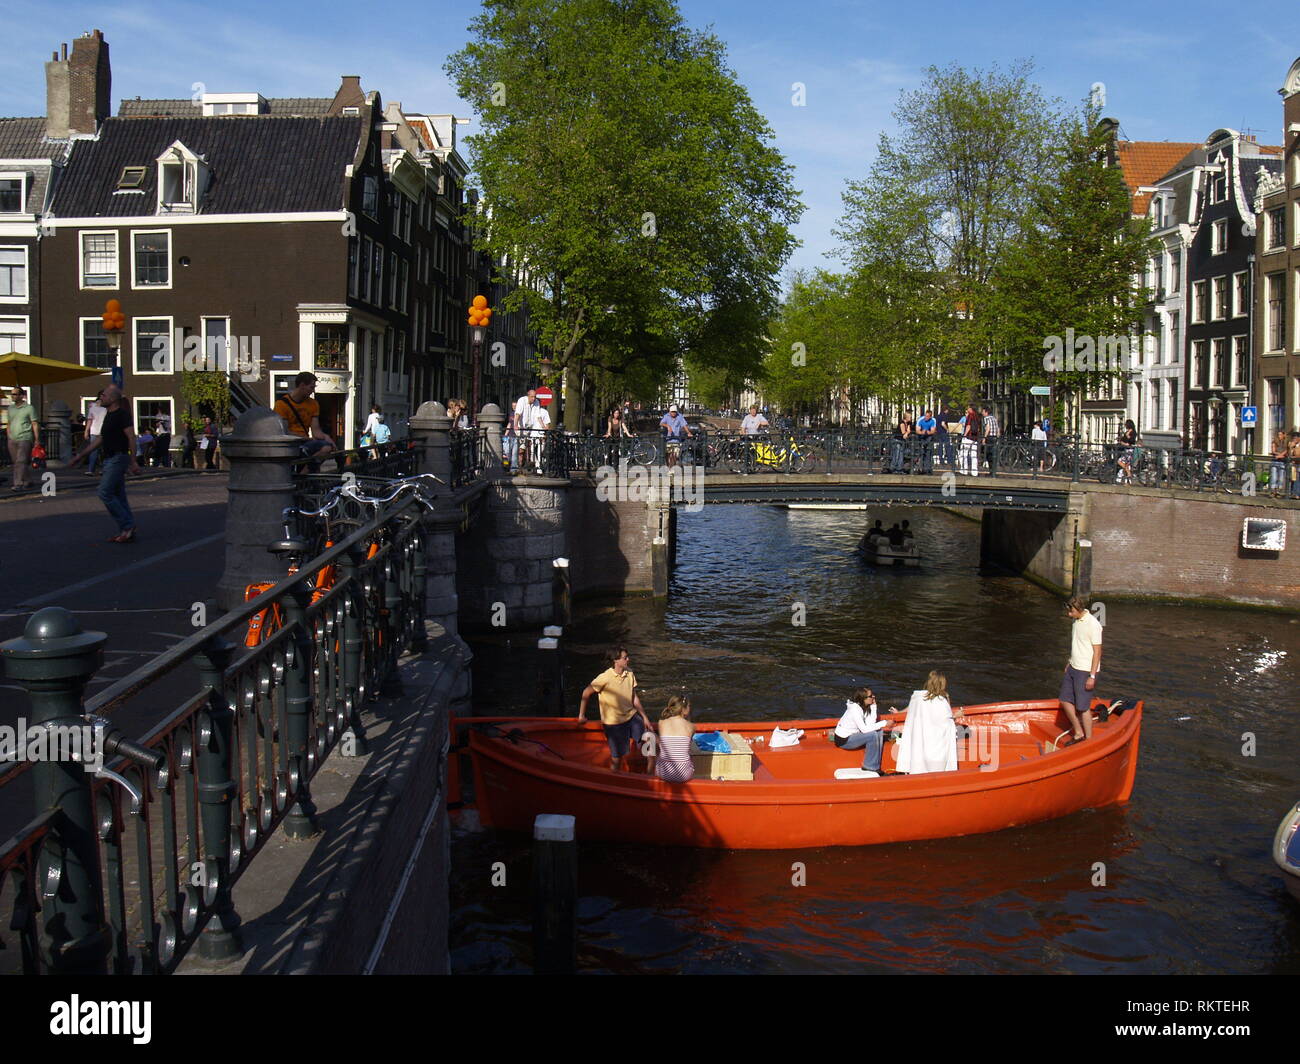 Koninginnedag (deutsch Königinnentag) ist Nationalfeiertag in den Niederlanden, der jährlich am 30. April gefeiert wird. An diesem Tag feiern die Nied Stock Photo